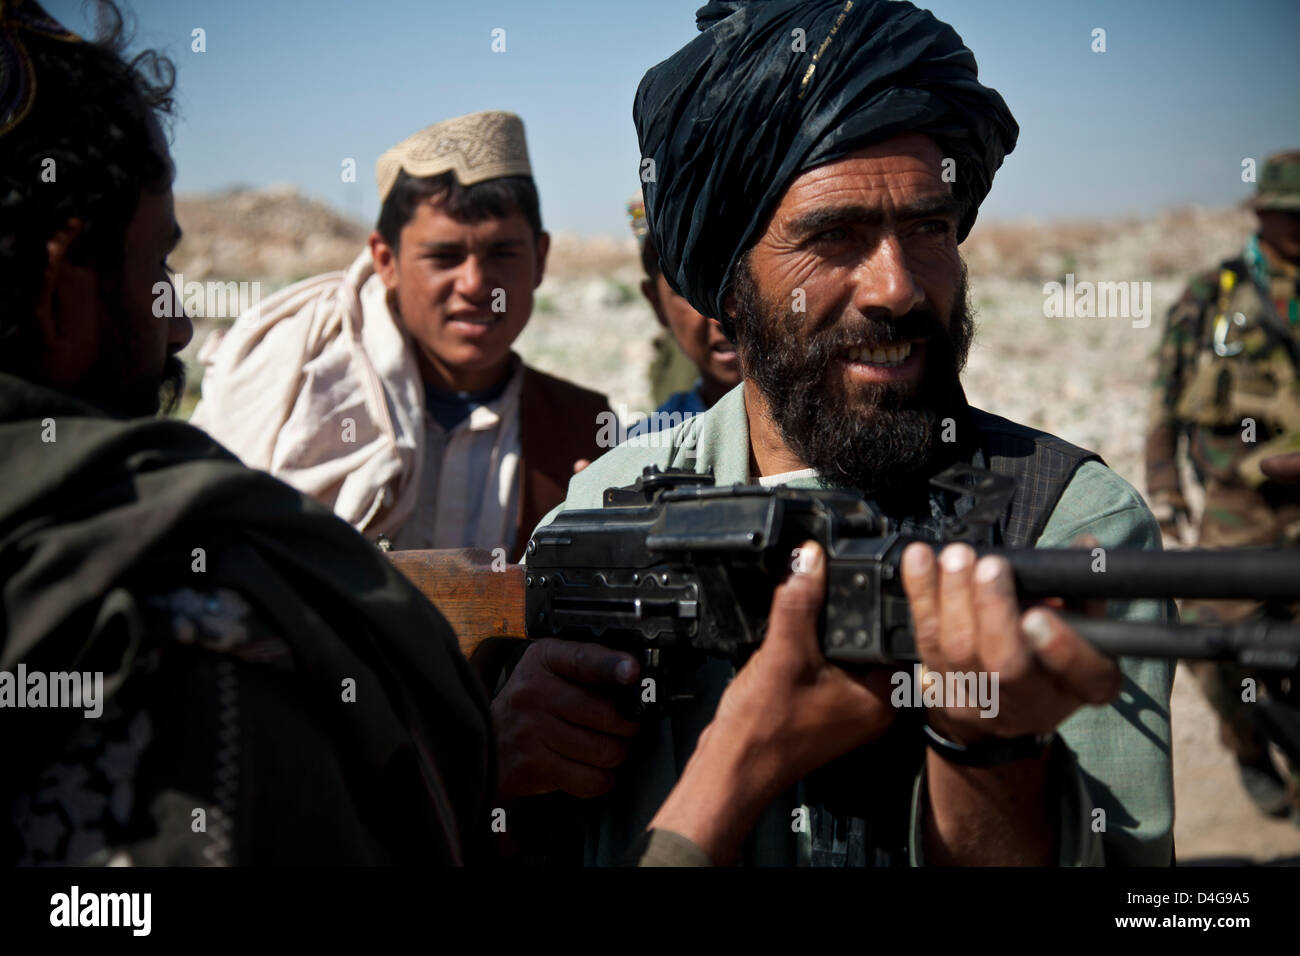 Afghanische Polizei Rekruten erhalten Waffentraining von afghanischen Nationalpolizei mit Sicherheit von Afghan National Army Special Forces 13. März 2013 in der Provinz Helmand, Afghanistan. Afghanische Polizei sind ein wichtiger Bestandteil der Aufstandsbekämpfung Aufwand in entlegenen Gebieten des Landes. Stockfoto